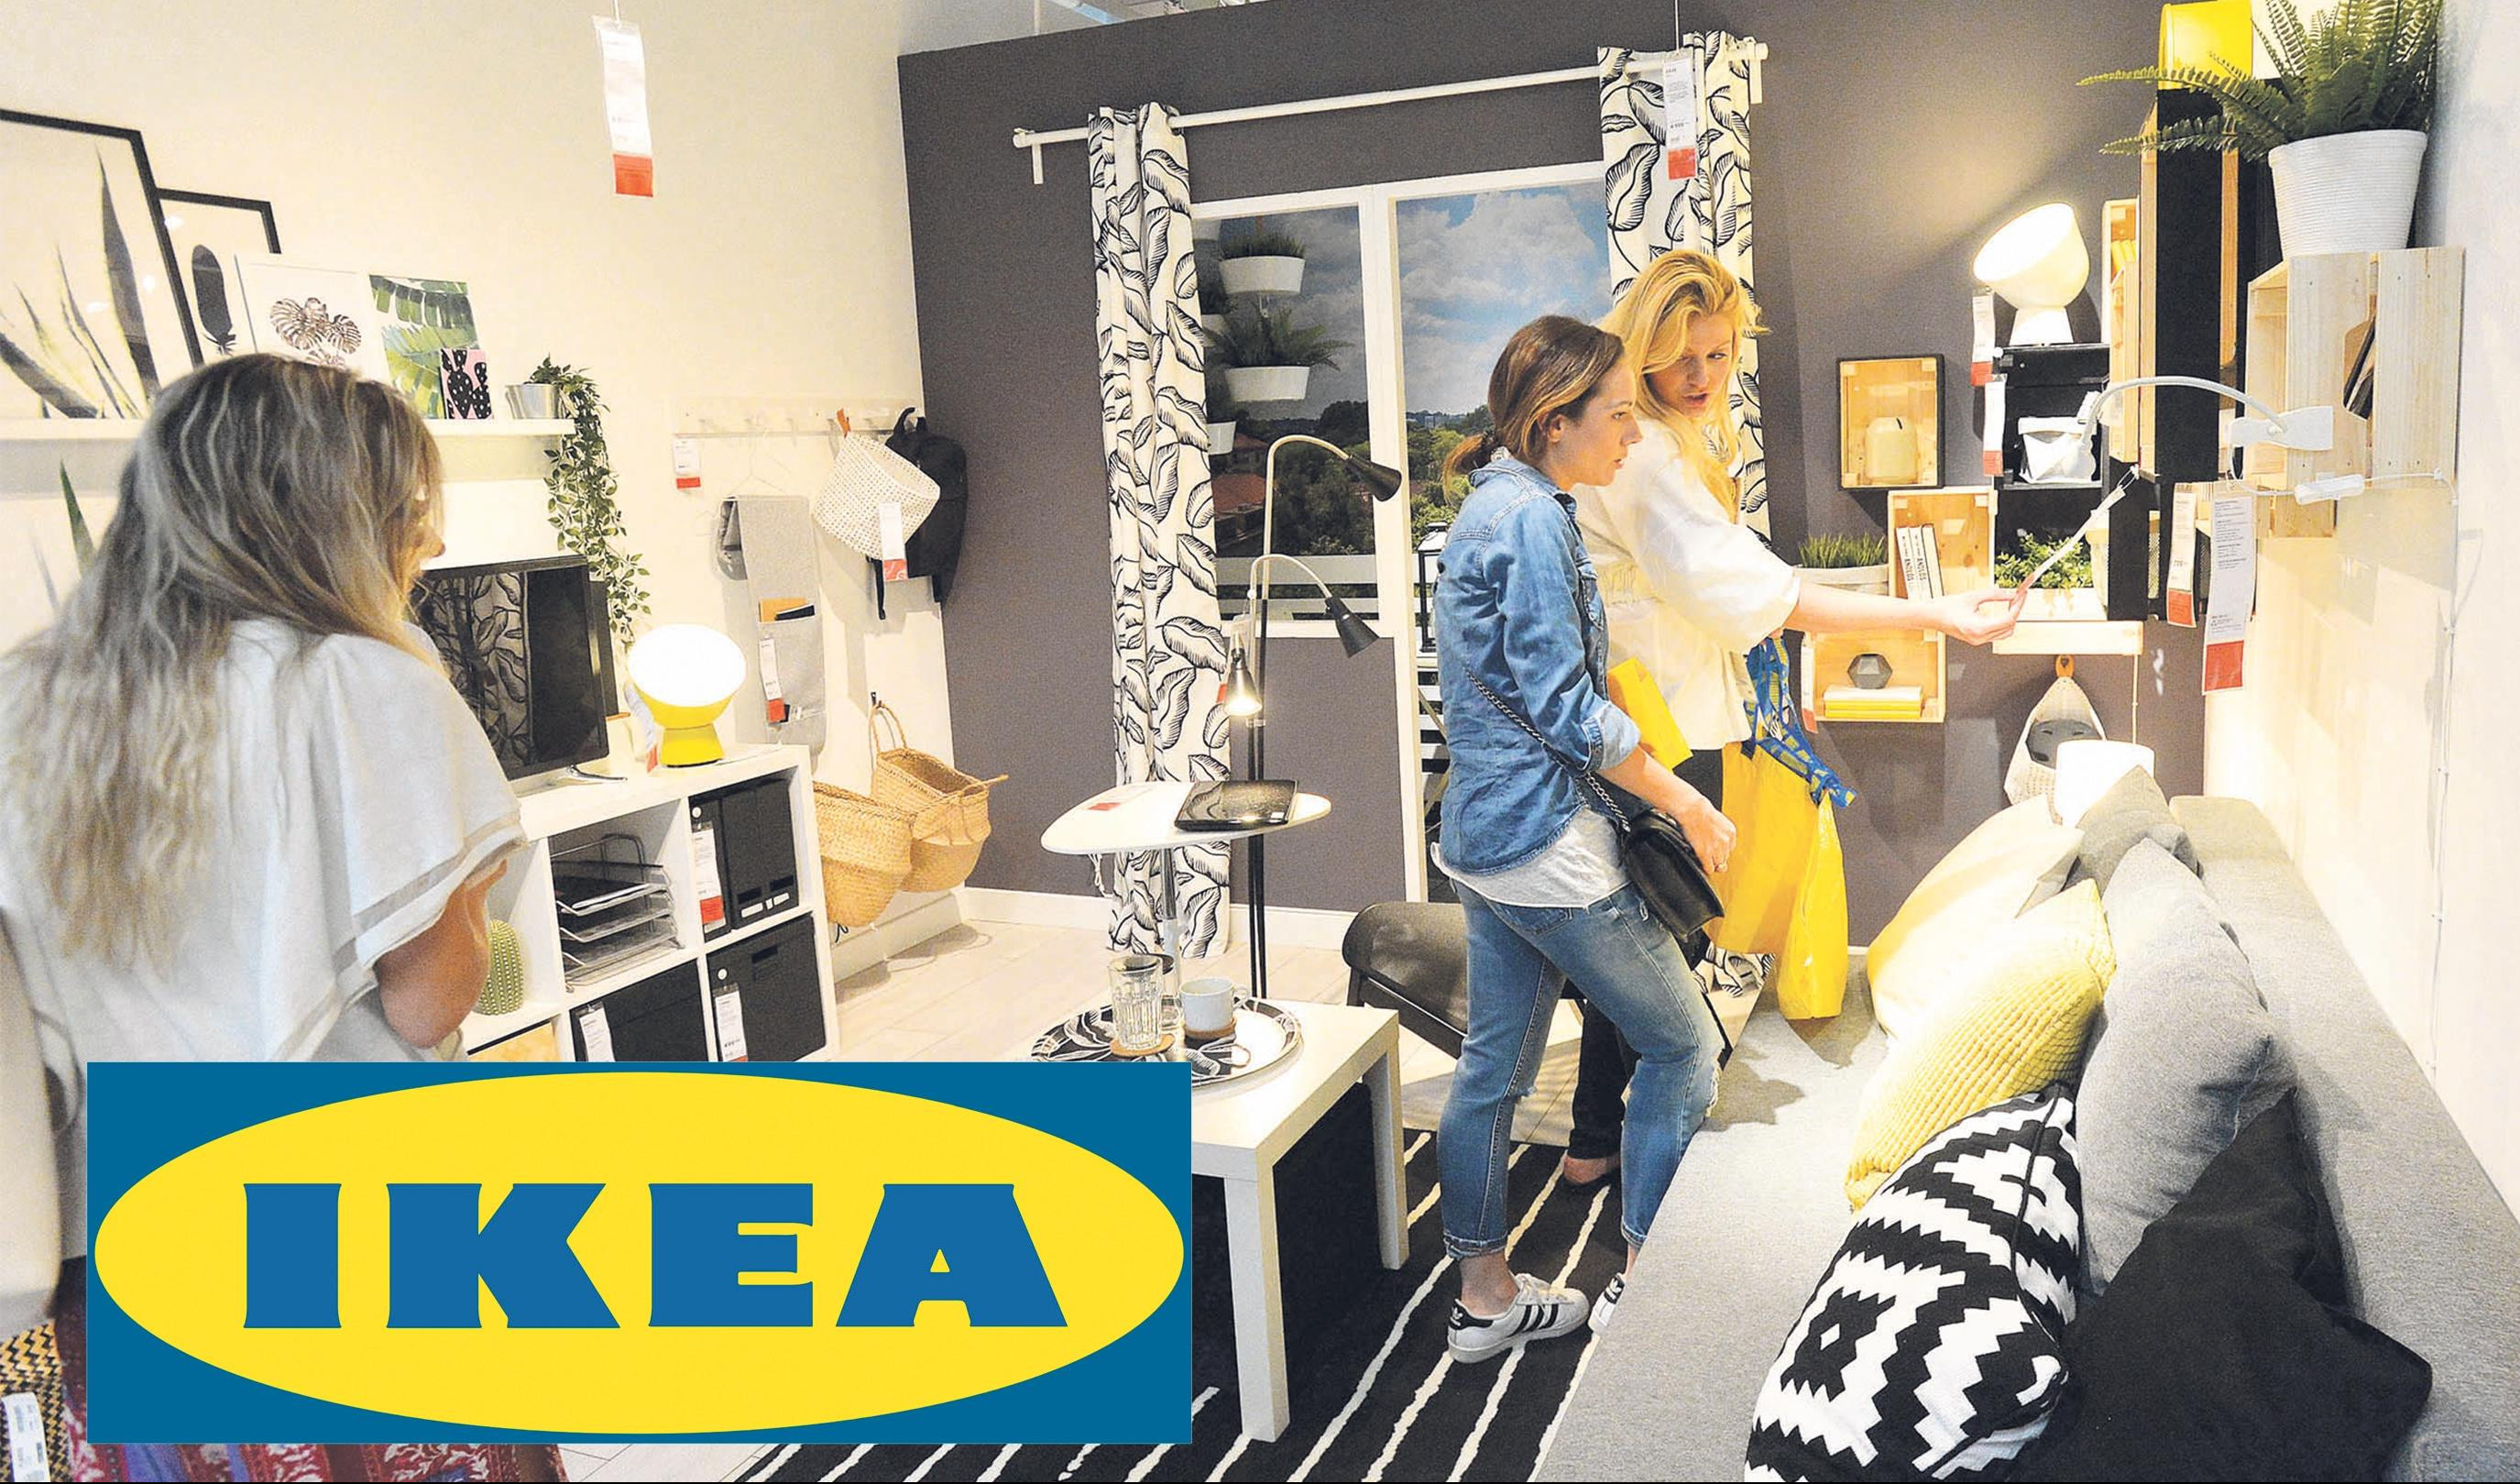 "IKEA" DERE SRPSKE KUPCE! U Bubanj Potoku SKUPLJE nego u Španiji i Švajcarskoj!